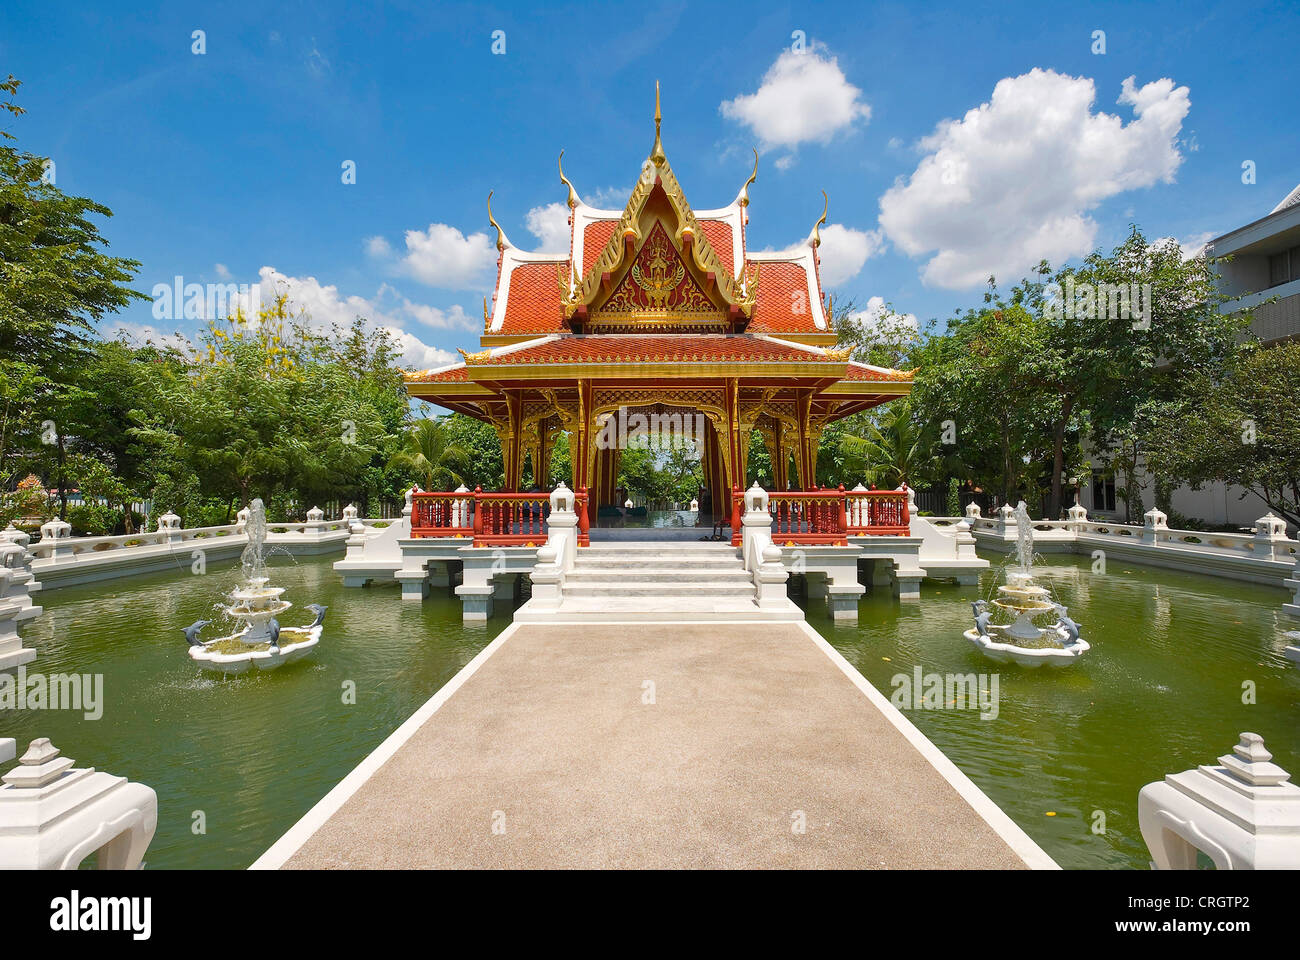 Thailand Culturel Centre, Thailand, Bangkok Stock Photo